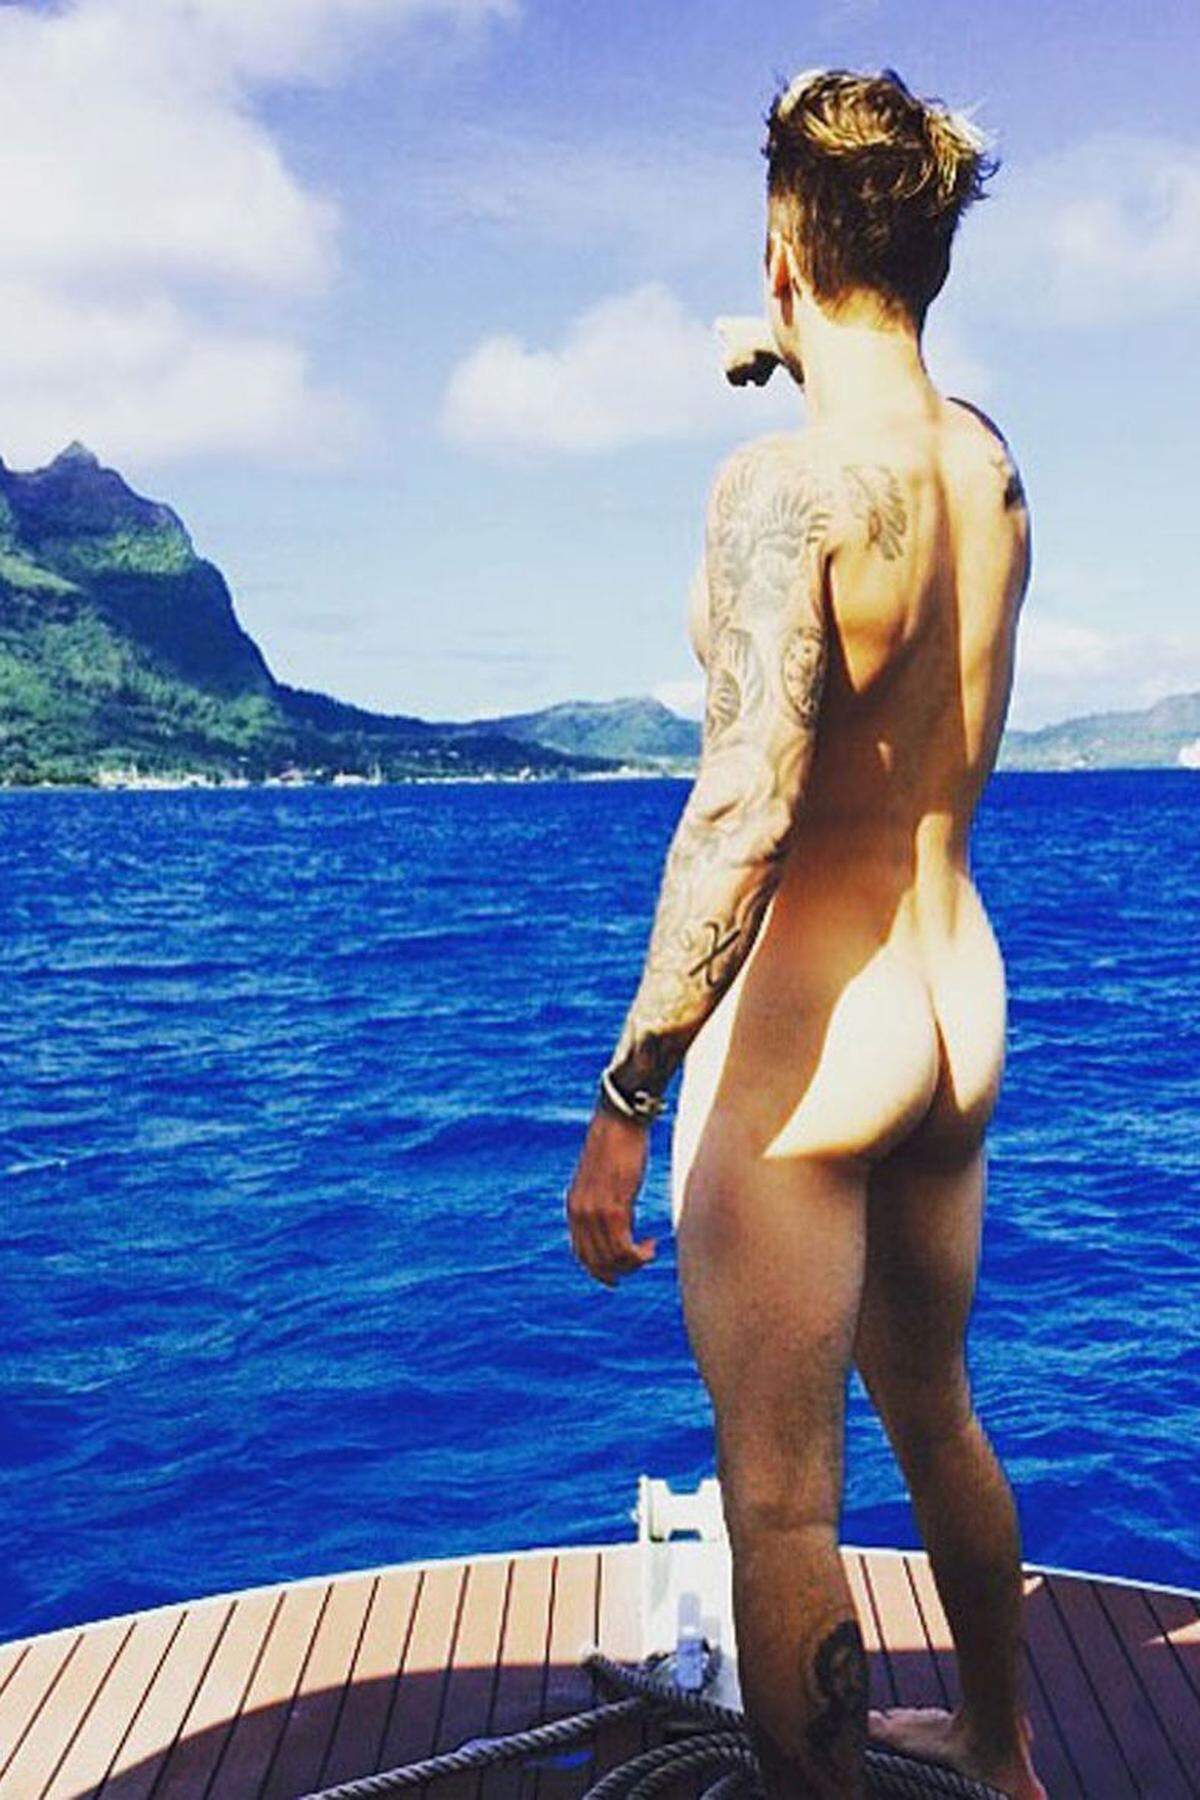 "Schau!", das ist eine Insel und so sieht ein echter "Bieber-Butt" aus. 1,6 Millionen "Gefällt mir"-Klicks produzierte der Hintern des 21-jährigen Sängers Justin Bieber binnen weniger Stunden. Genauere Angaben zu seinem Aufenthaltsort machte keine. Andere Stars geben mehr Einblick in ihre Urlaubsorte.